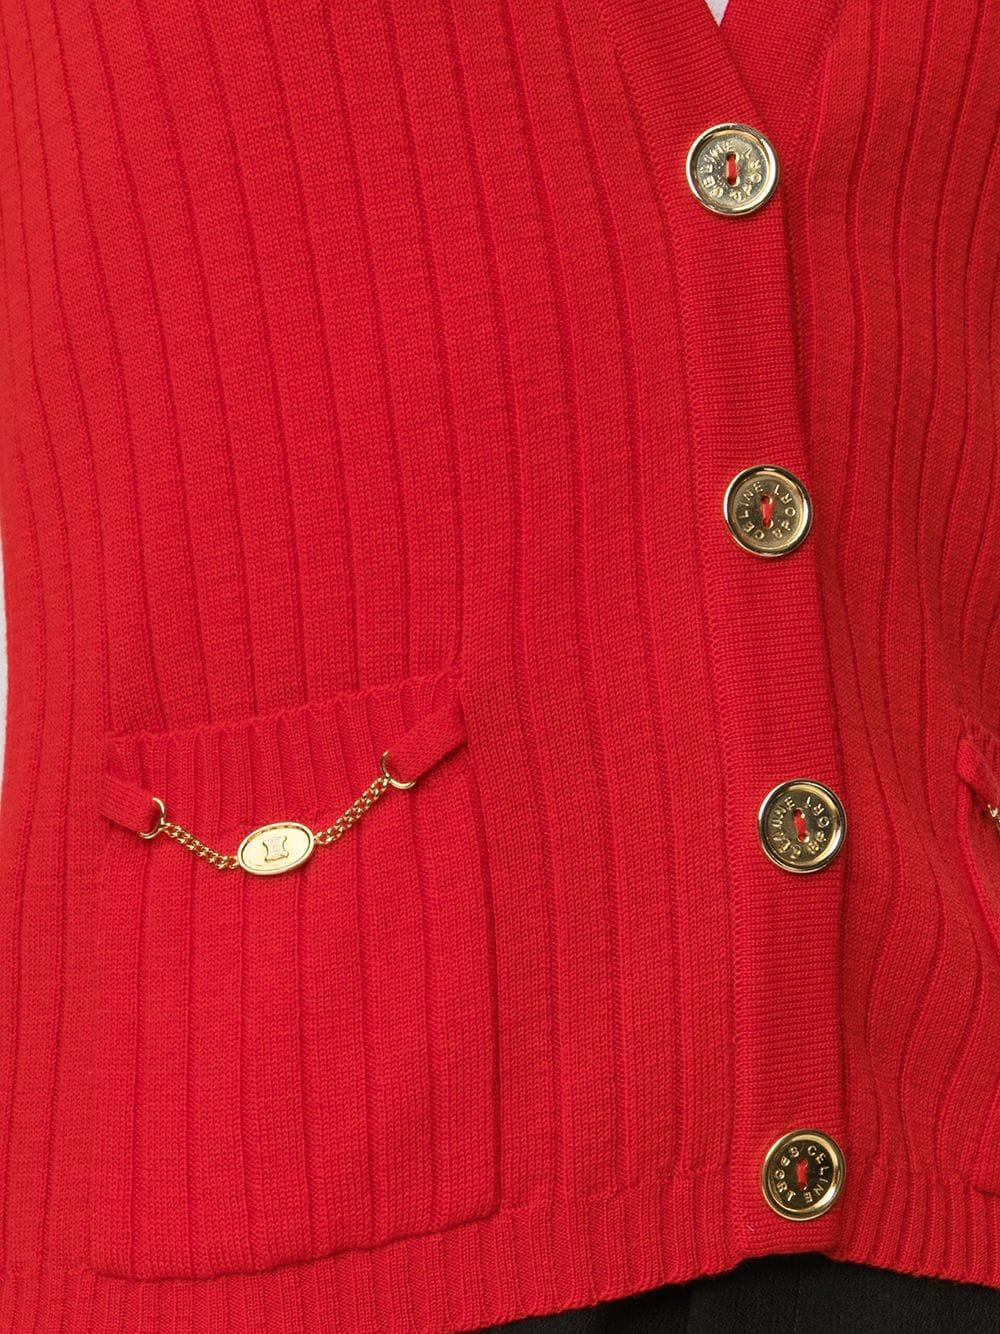 Rote Vintage-Weste von Céline mit V-Ausschnitt und doppelten Taschen vorne. Mit goldfarbenen, gravierten Knöpfen (der innere Ersatzknopf ist noch vorhanden) und kleinen goldenen Ketten an den Taschen.	

Farbe: Rot/Gold	

Zusammensetzung: 100%